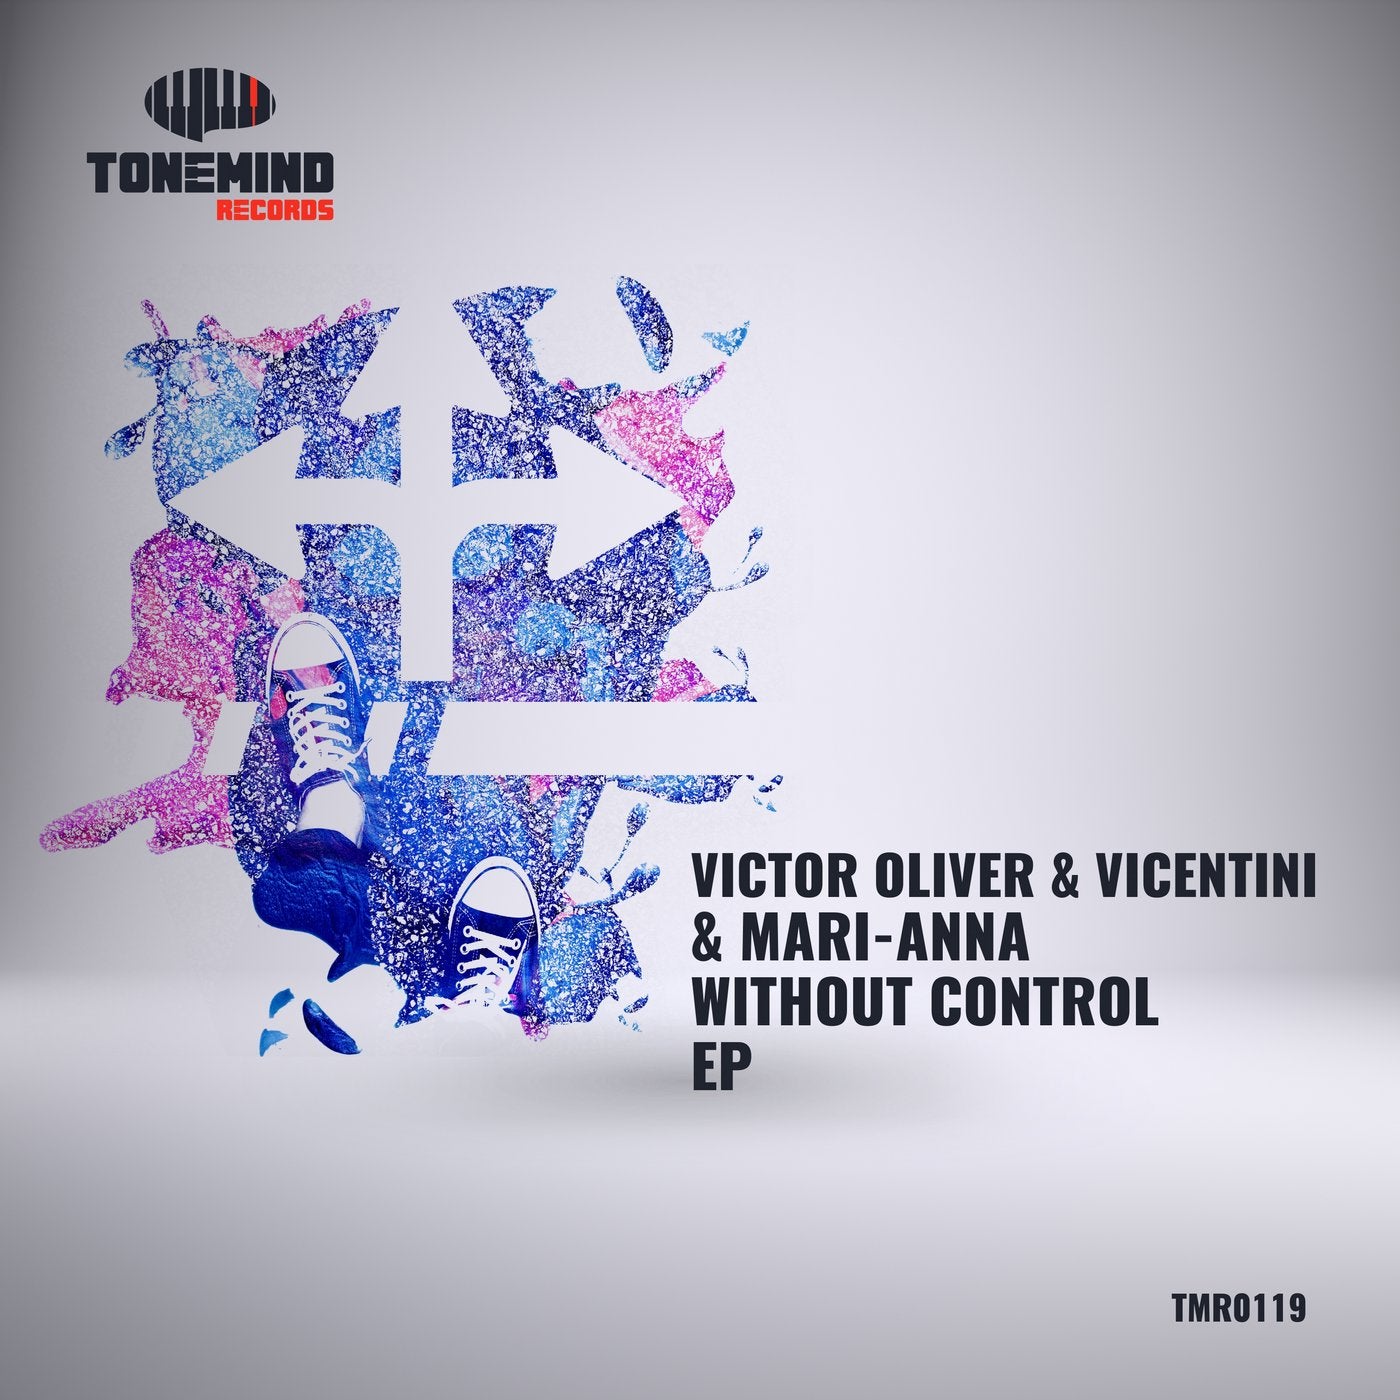 Victor Olivier. Victor Olivier + Lena Muse. Bellatriz and Victor Oliver and Vicentini and Bones Howe Amor de Flor (Mark Macklure Remix). Without control